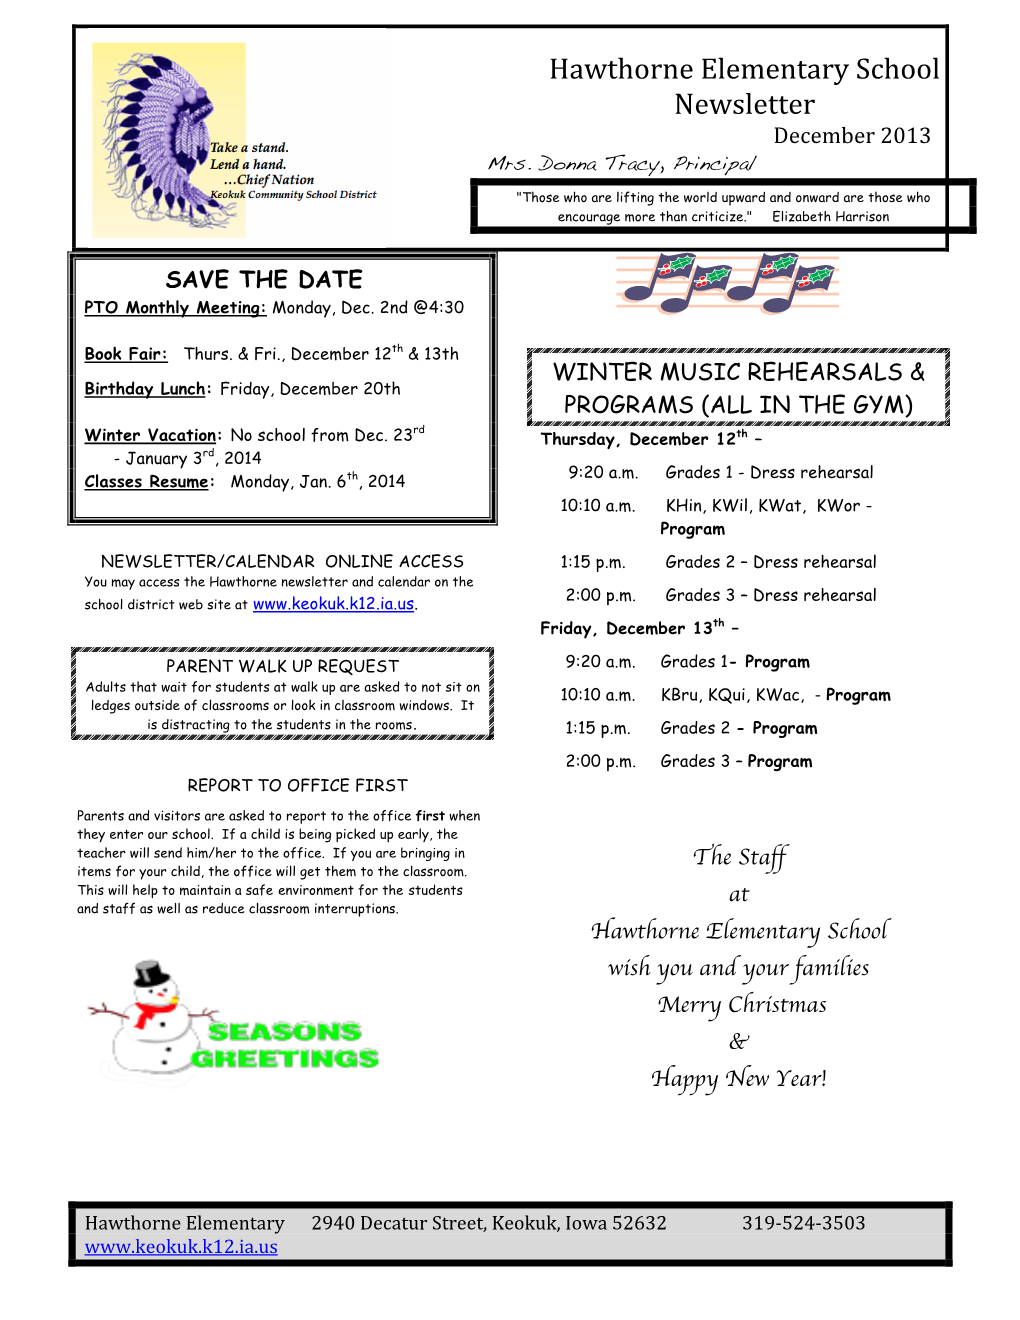 Hawthorne Elementary School Newsletter December 2013 Mrs